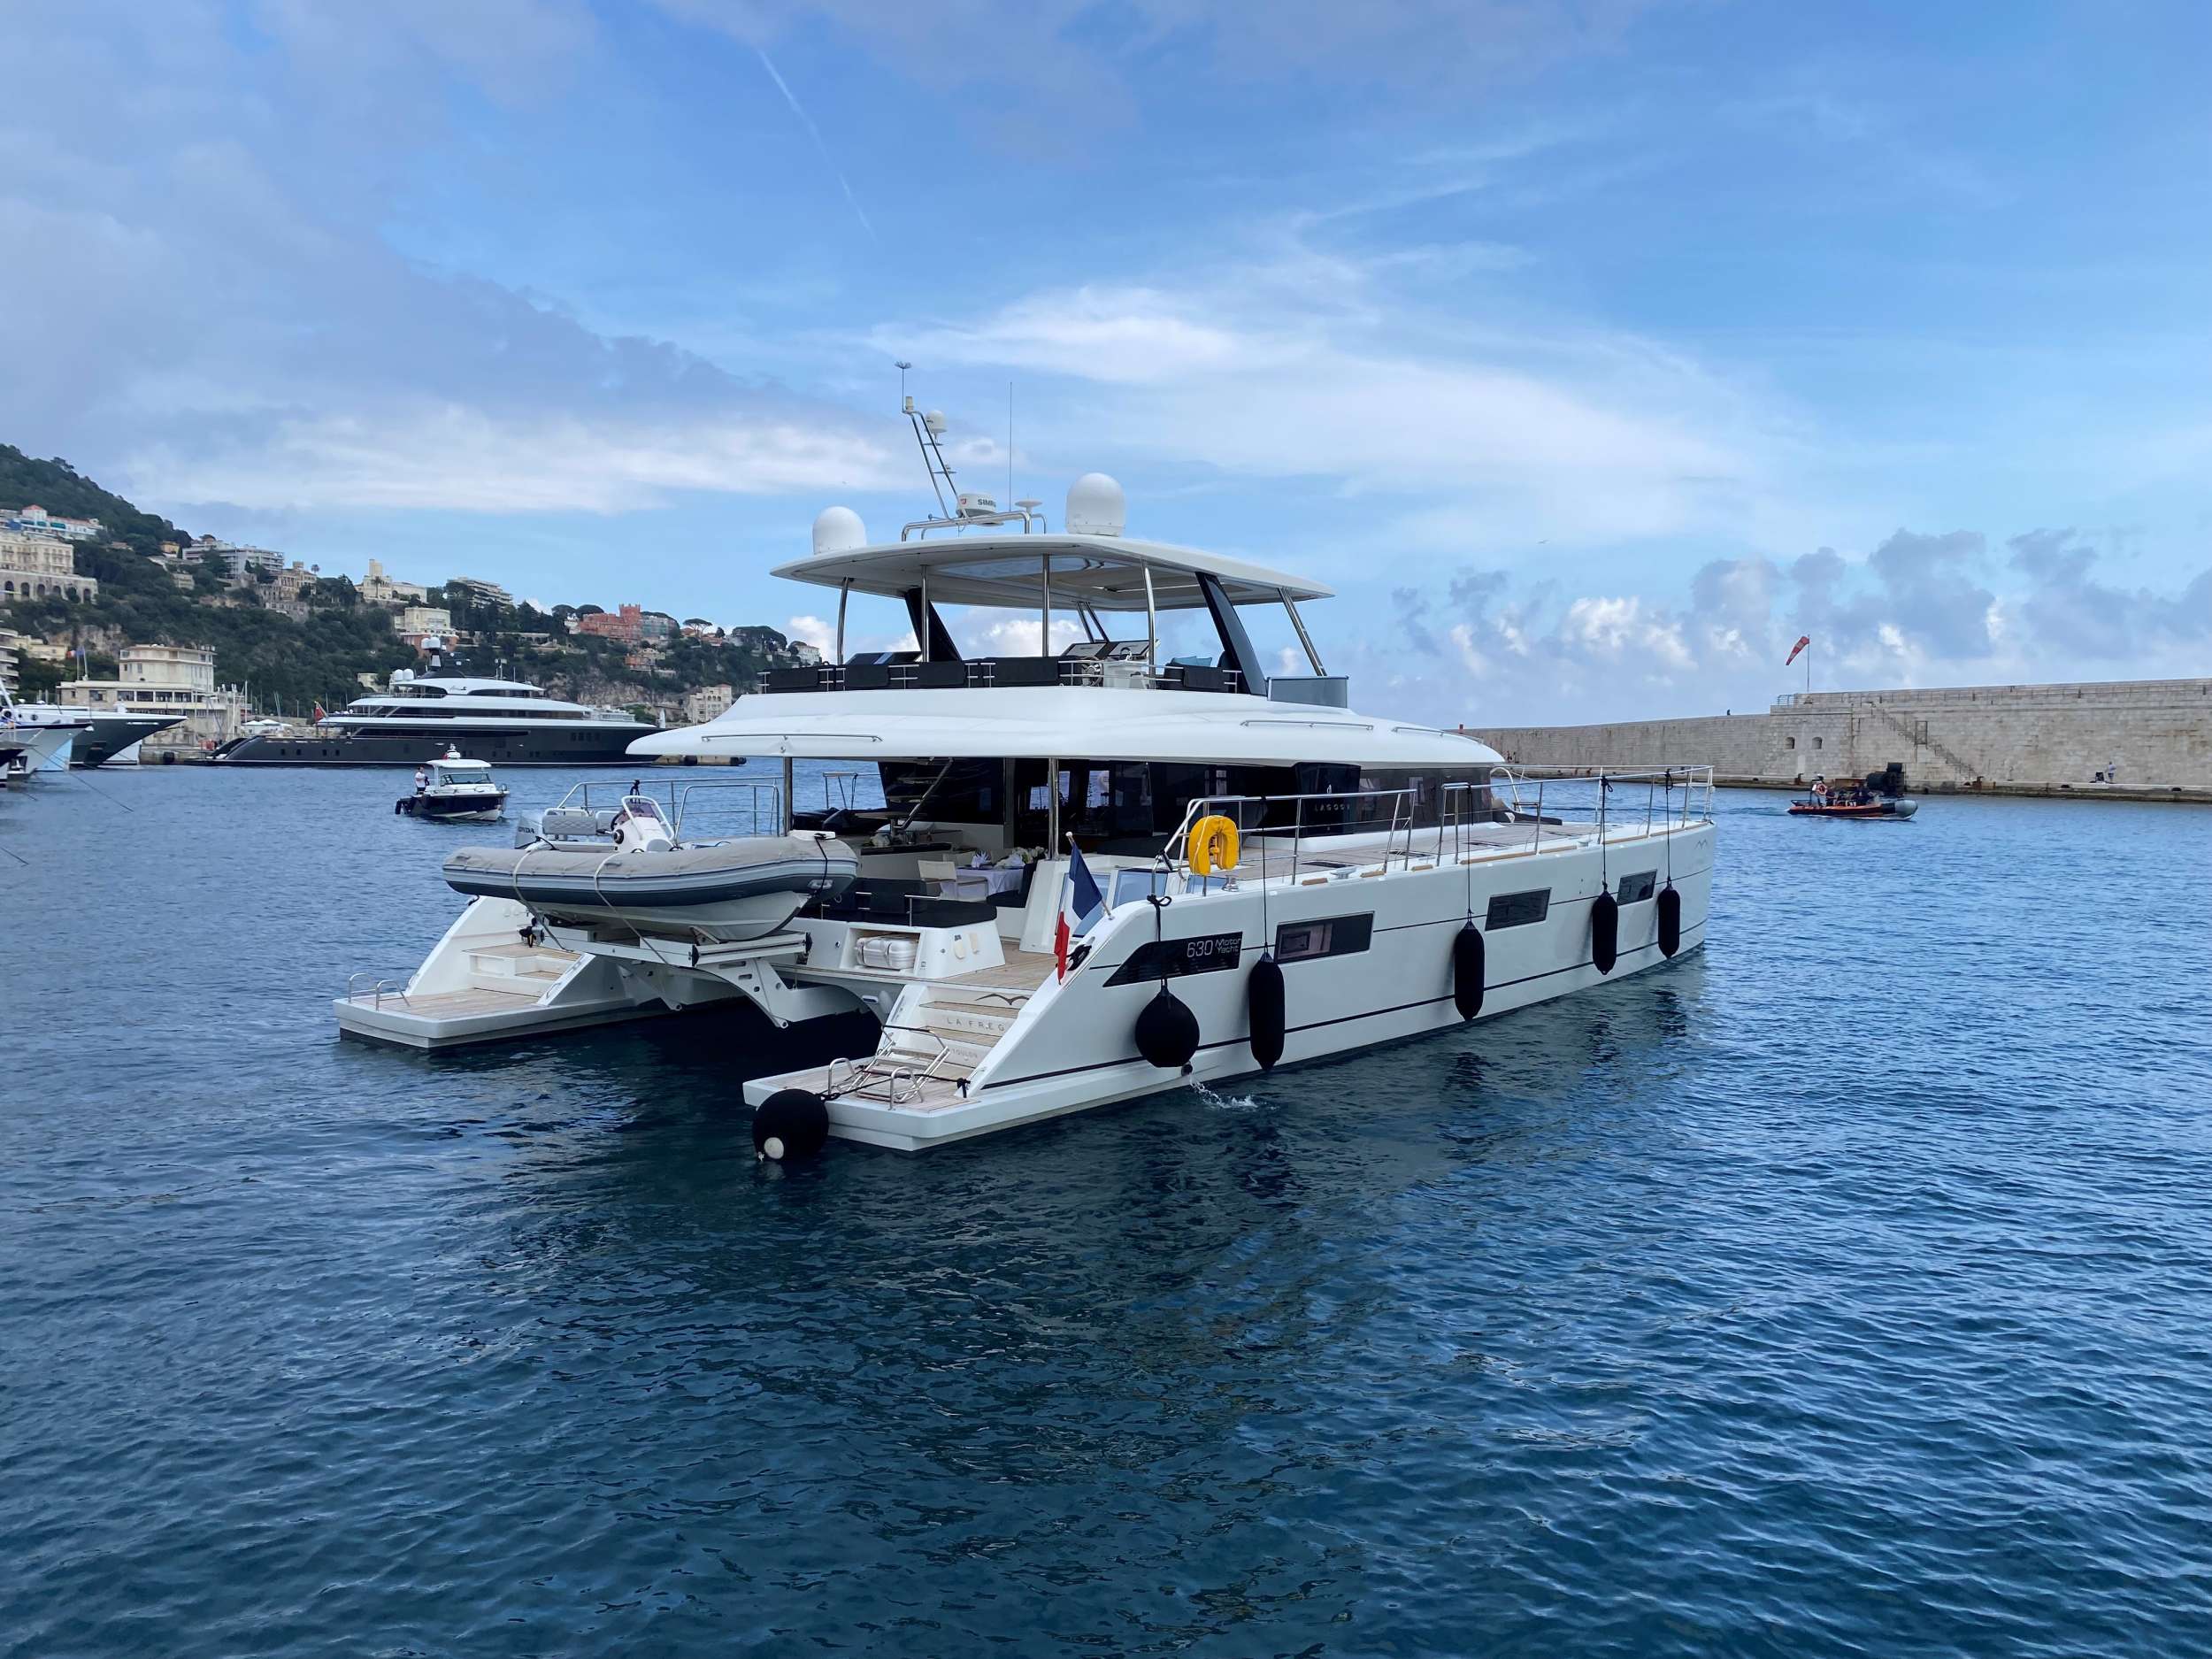 LA FREGATE - Motor Boat Charter France & Boat hire in Fr. Riviera, Corsica & Sardinia 1